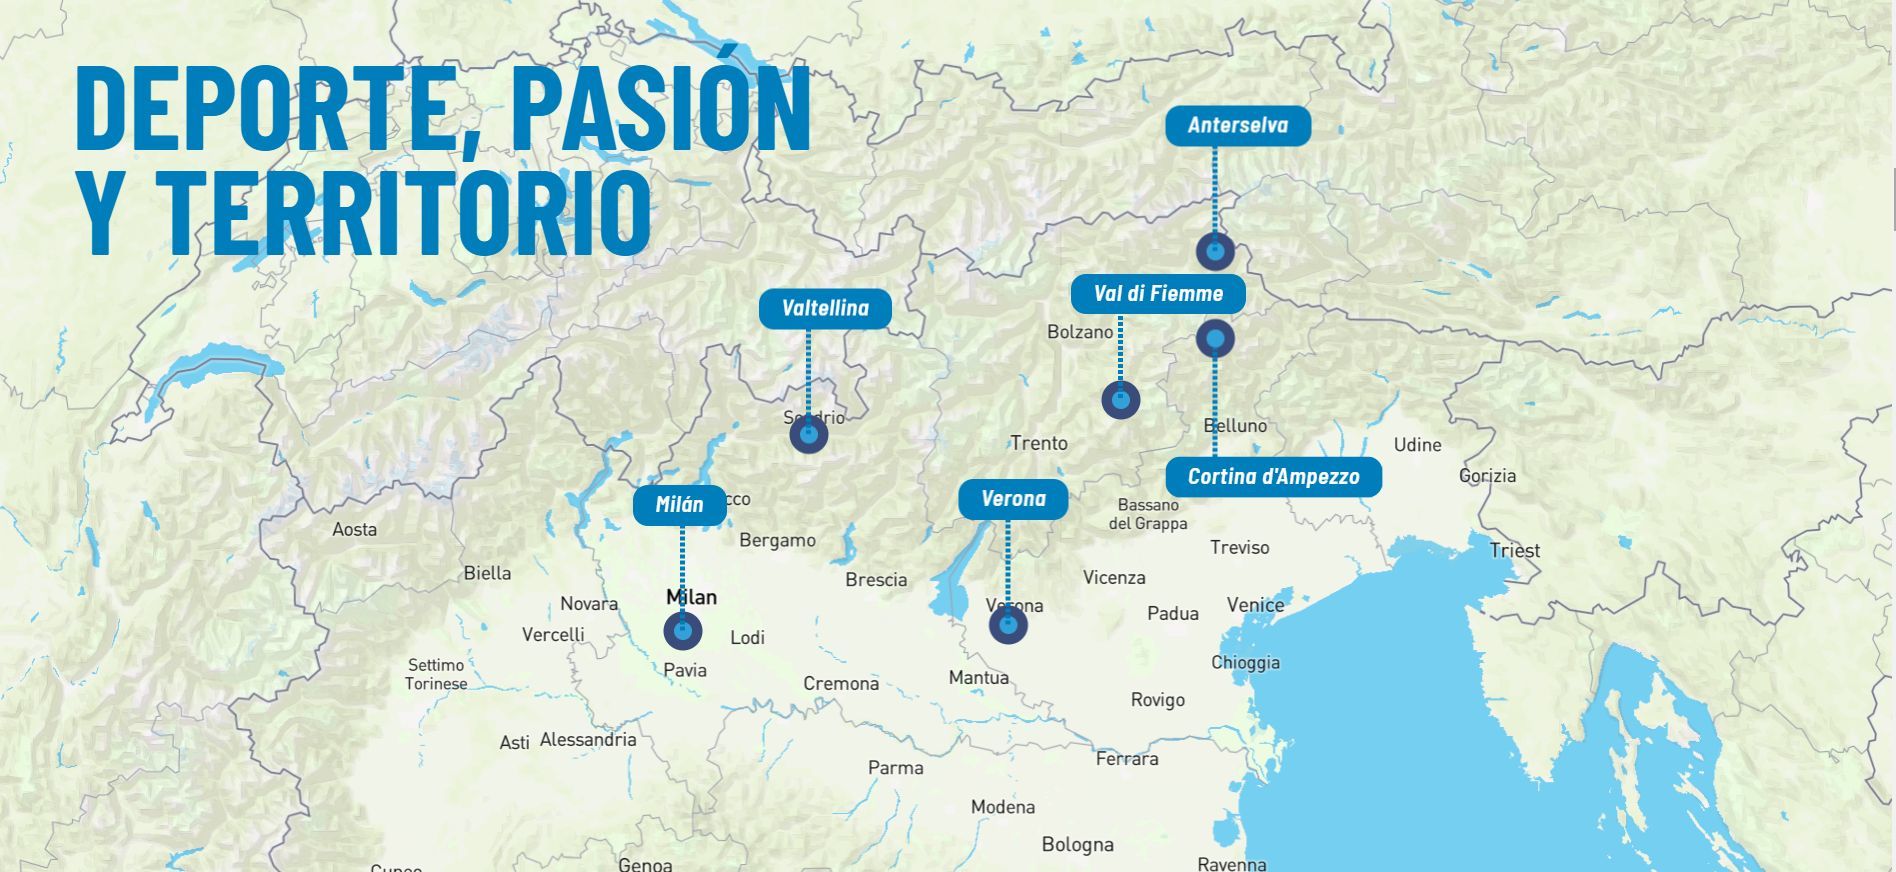 Mapa de las sedes olímpicas Milan Cortina Ampezzo 2026